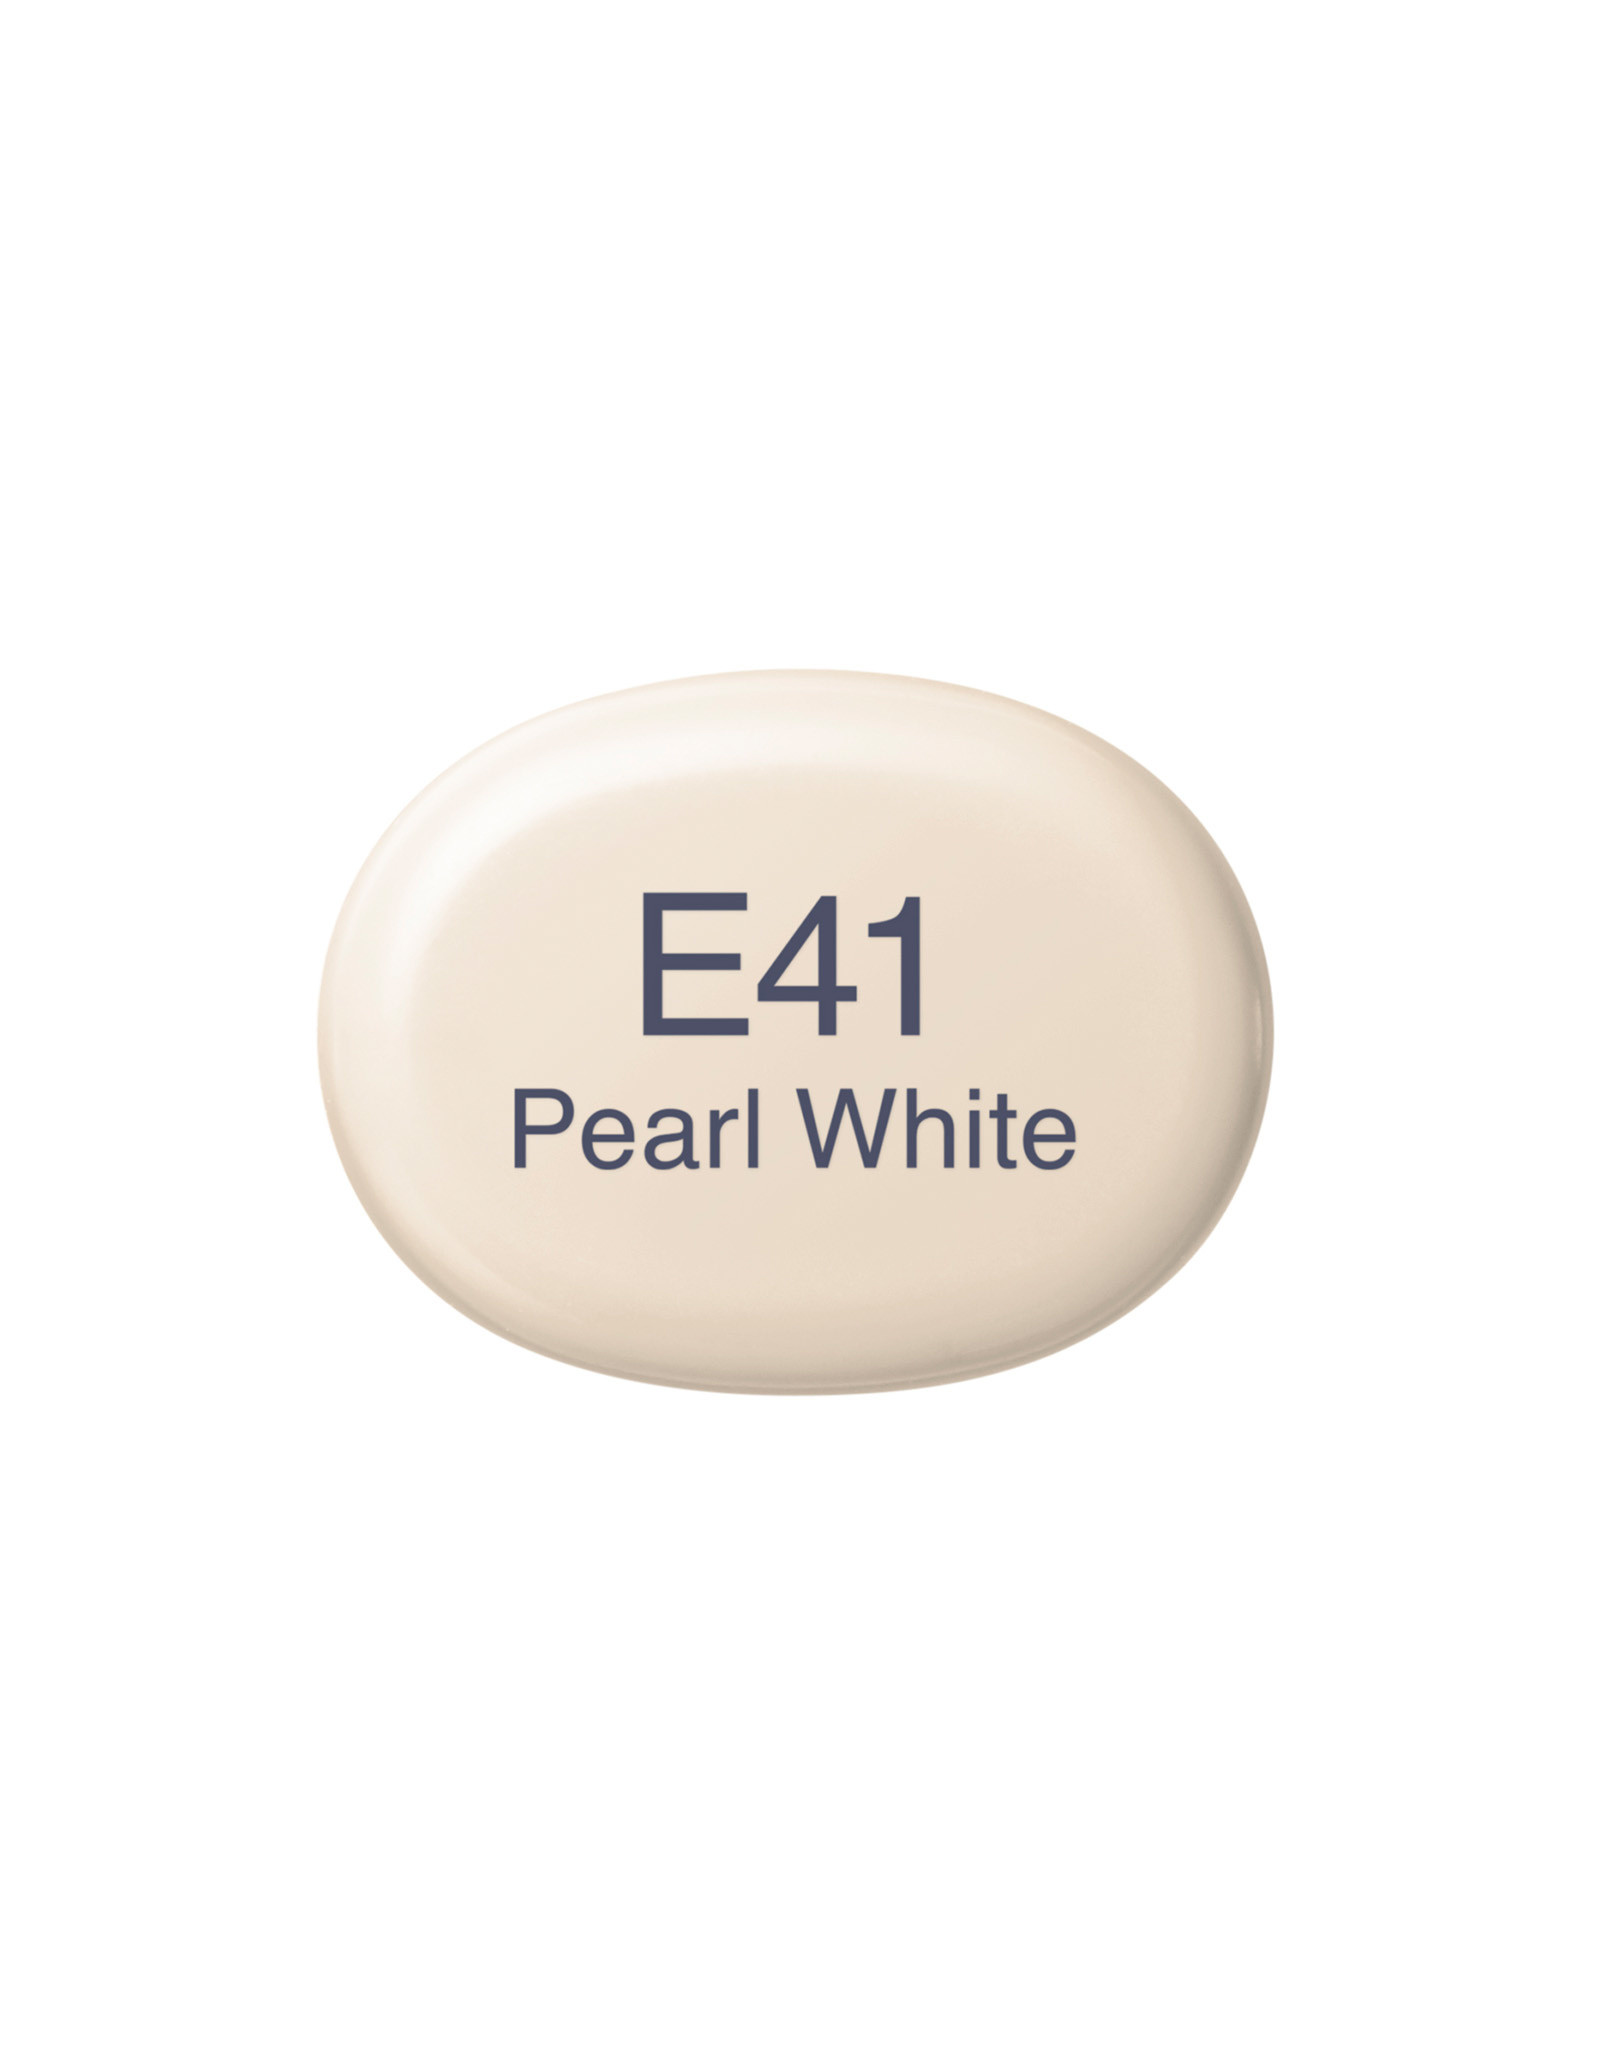 COPIC COPIC Sketch Marker E41 Pearl White